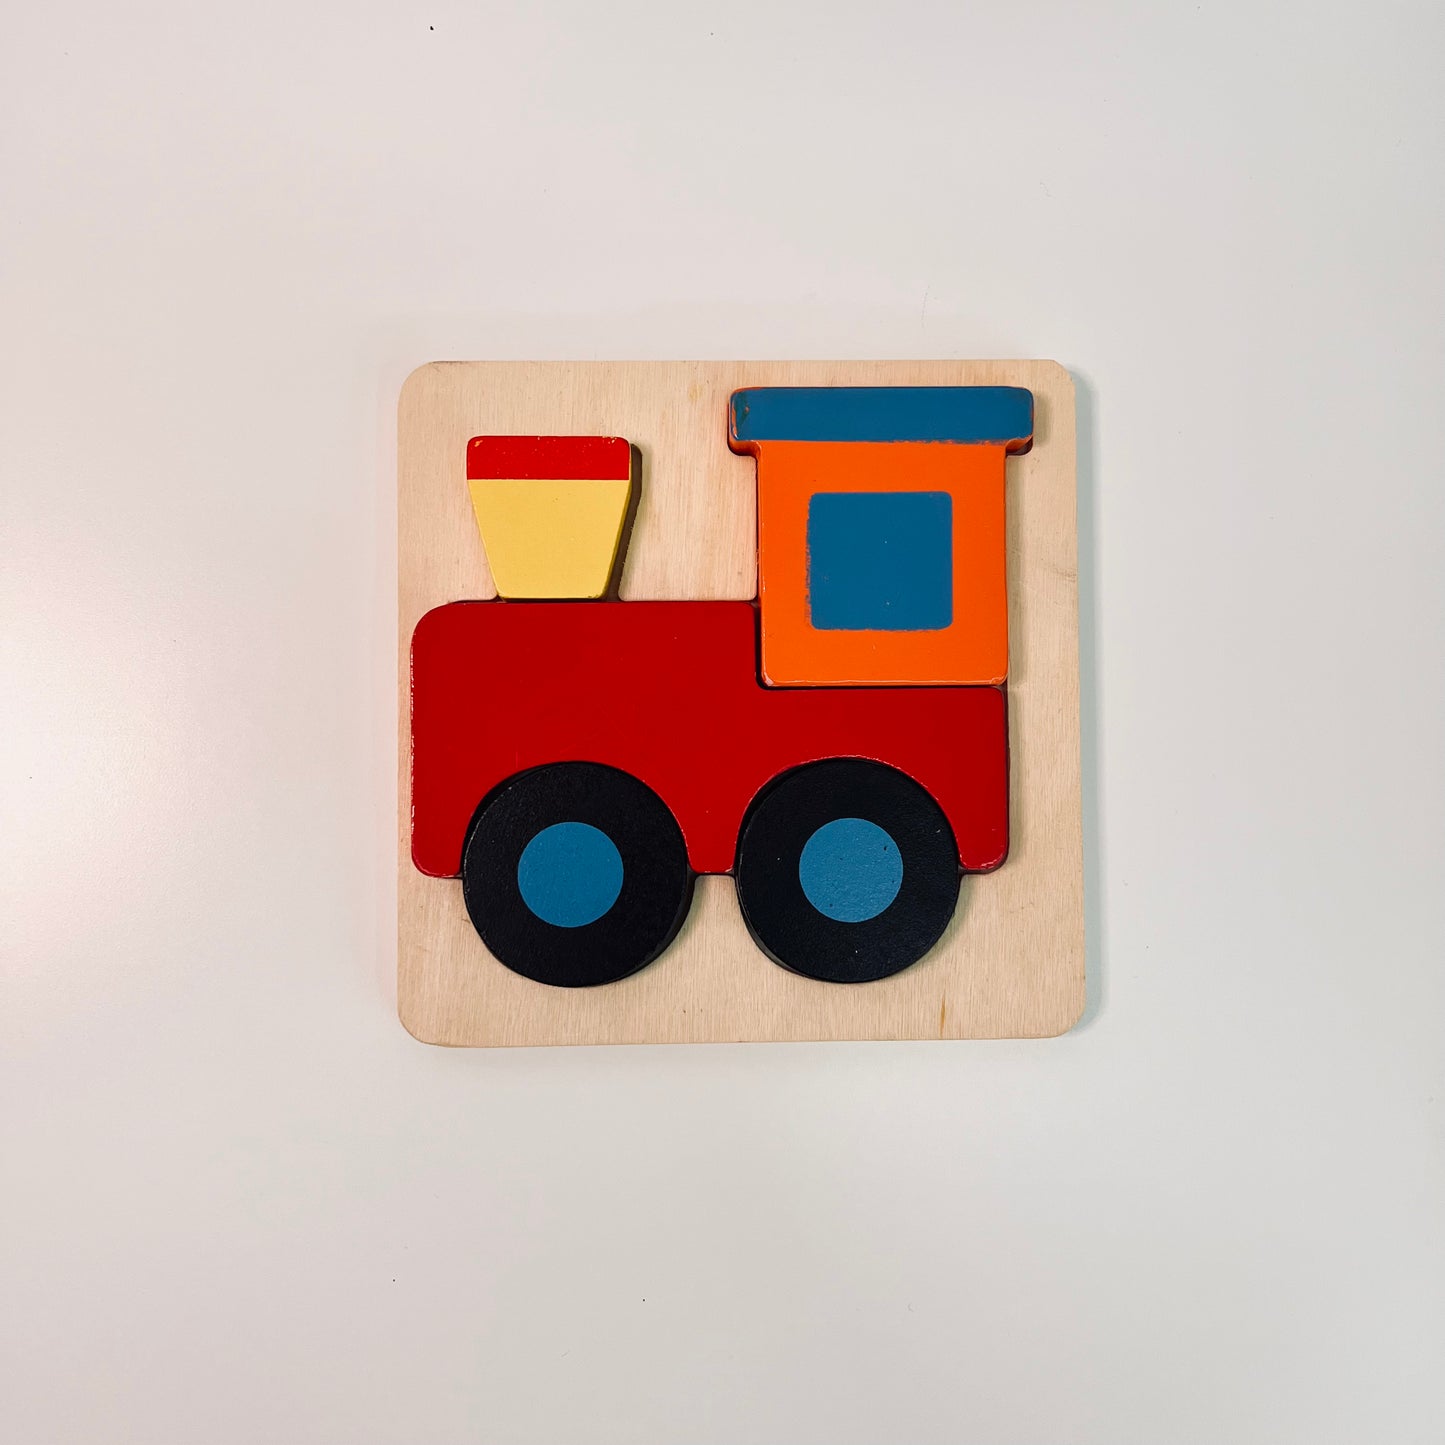 The little montessori train puzzle